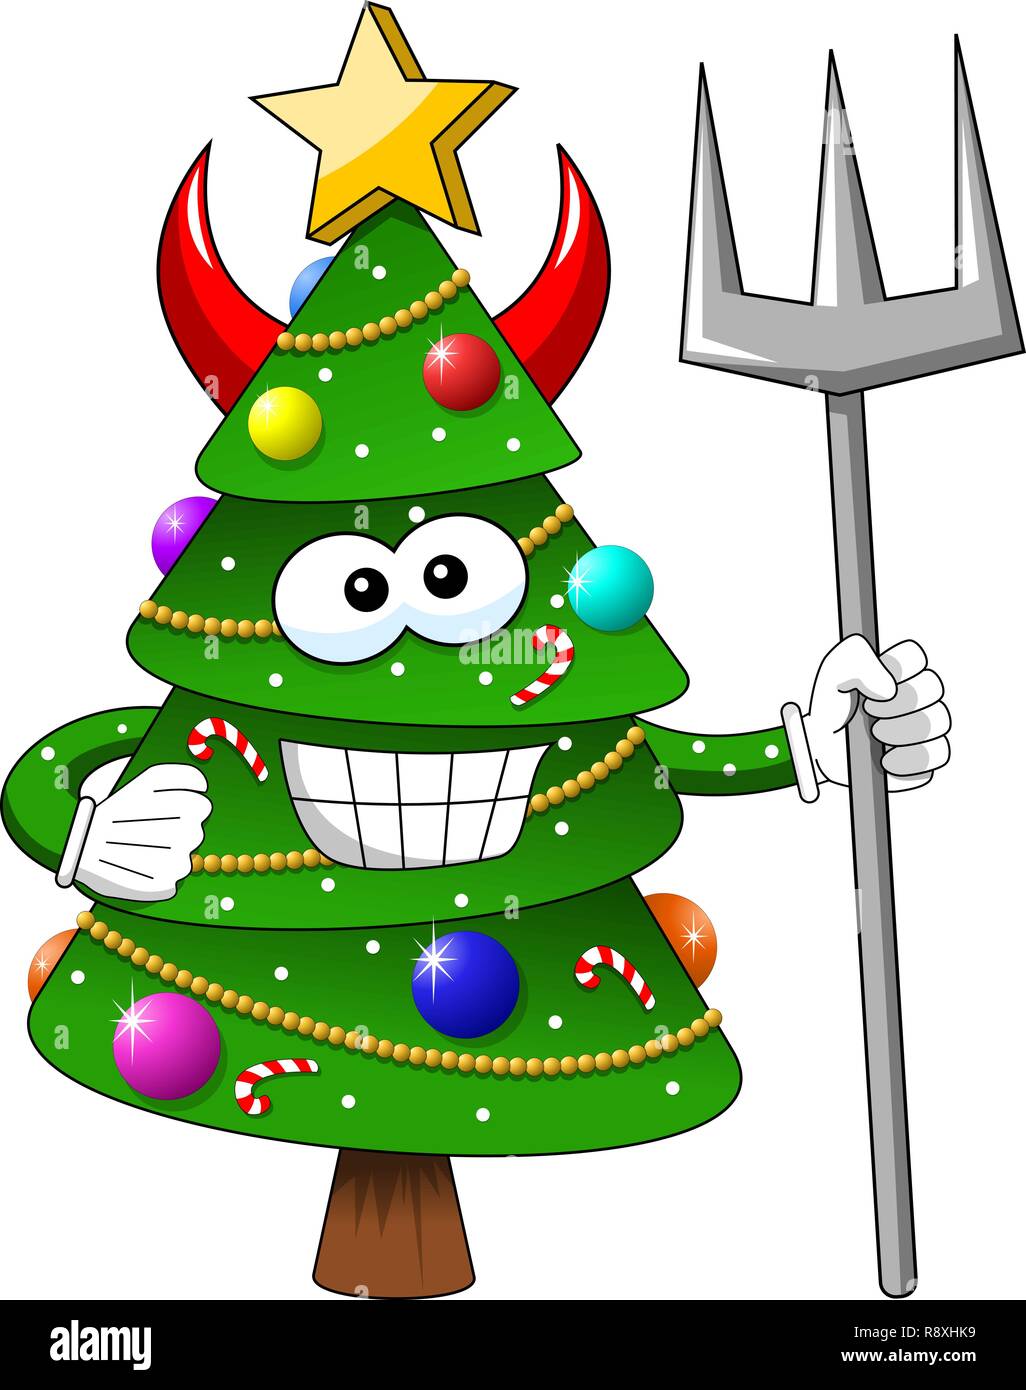 Noël sapin character mascot cartoon isolés trident diable Illustration de Vecteur